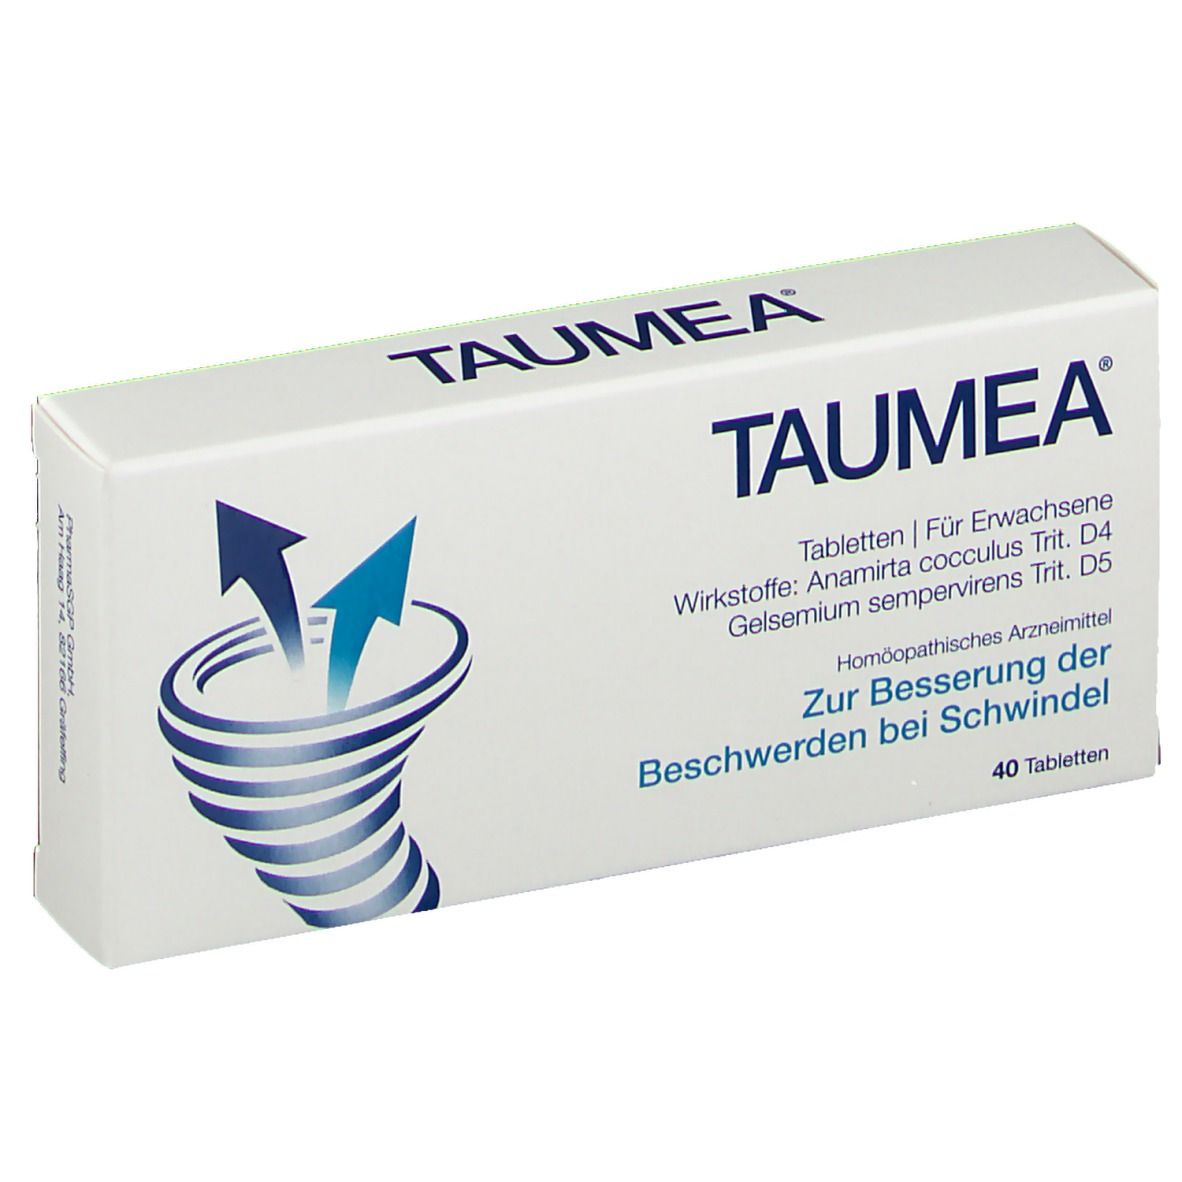 TAUMEA® Tabletten